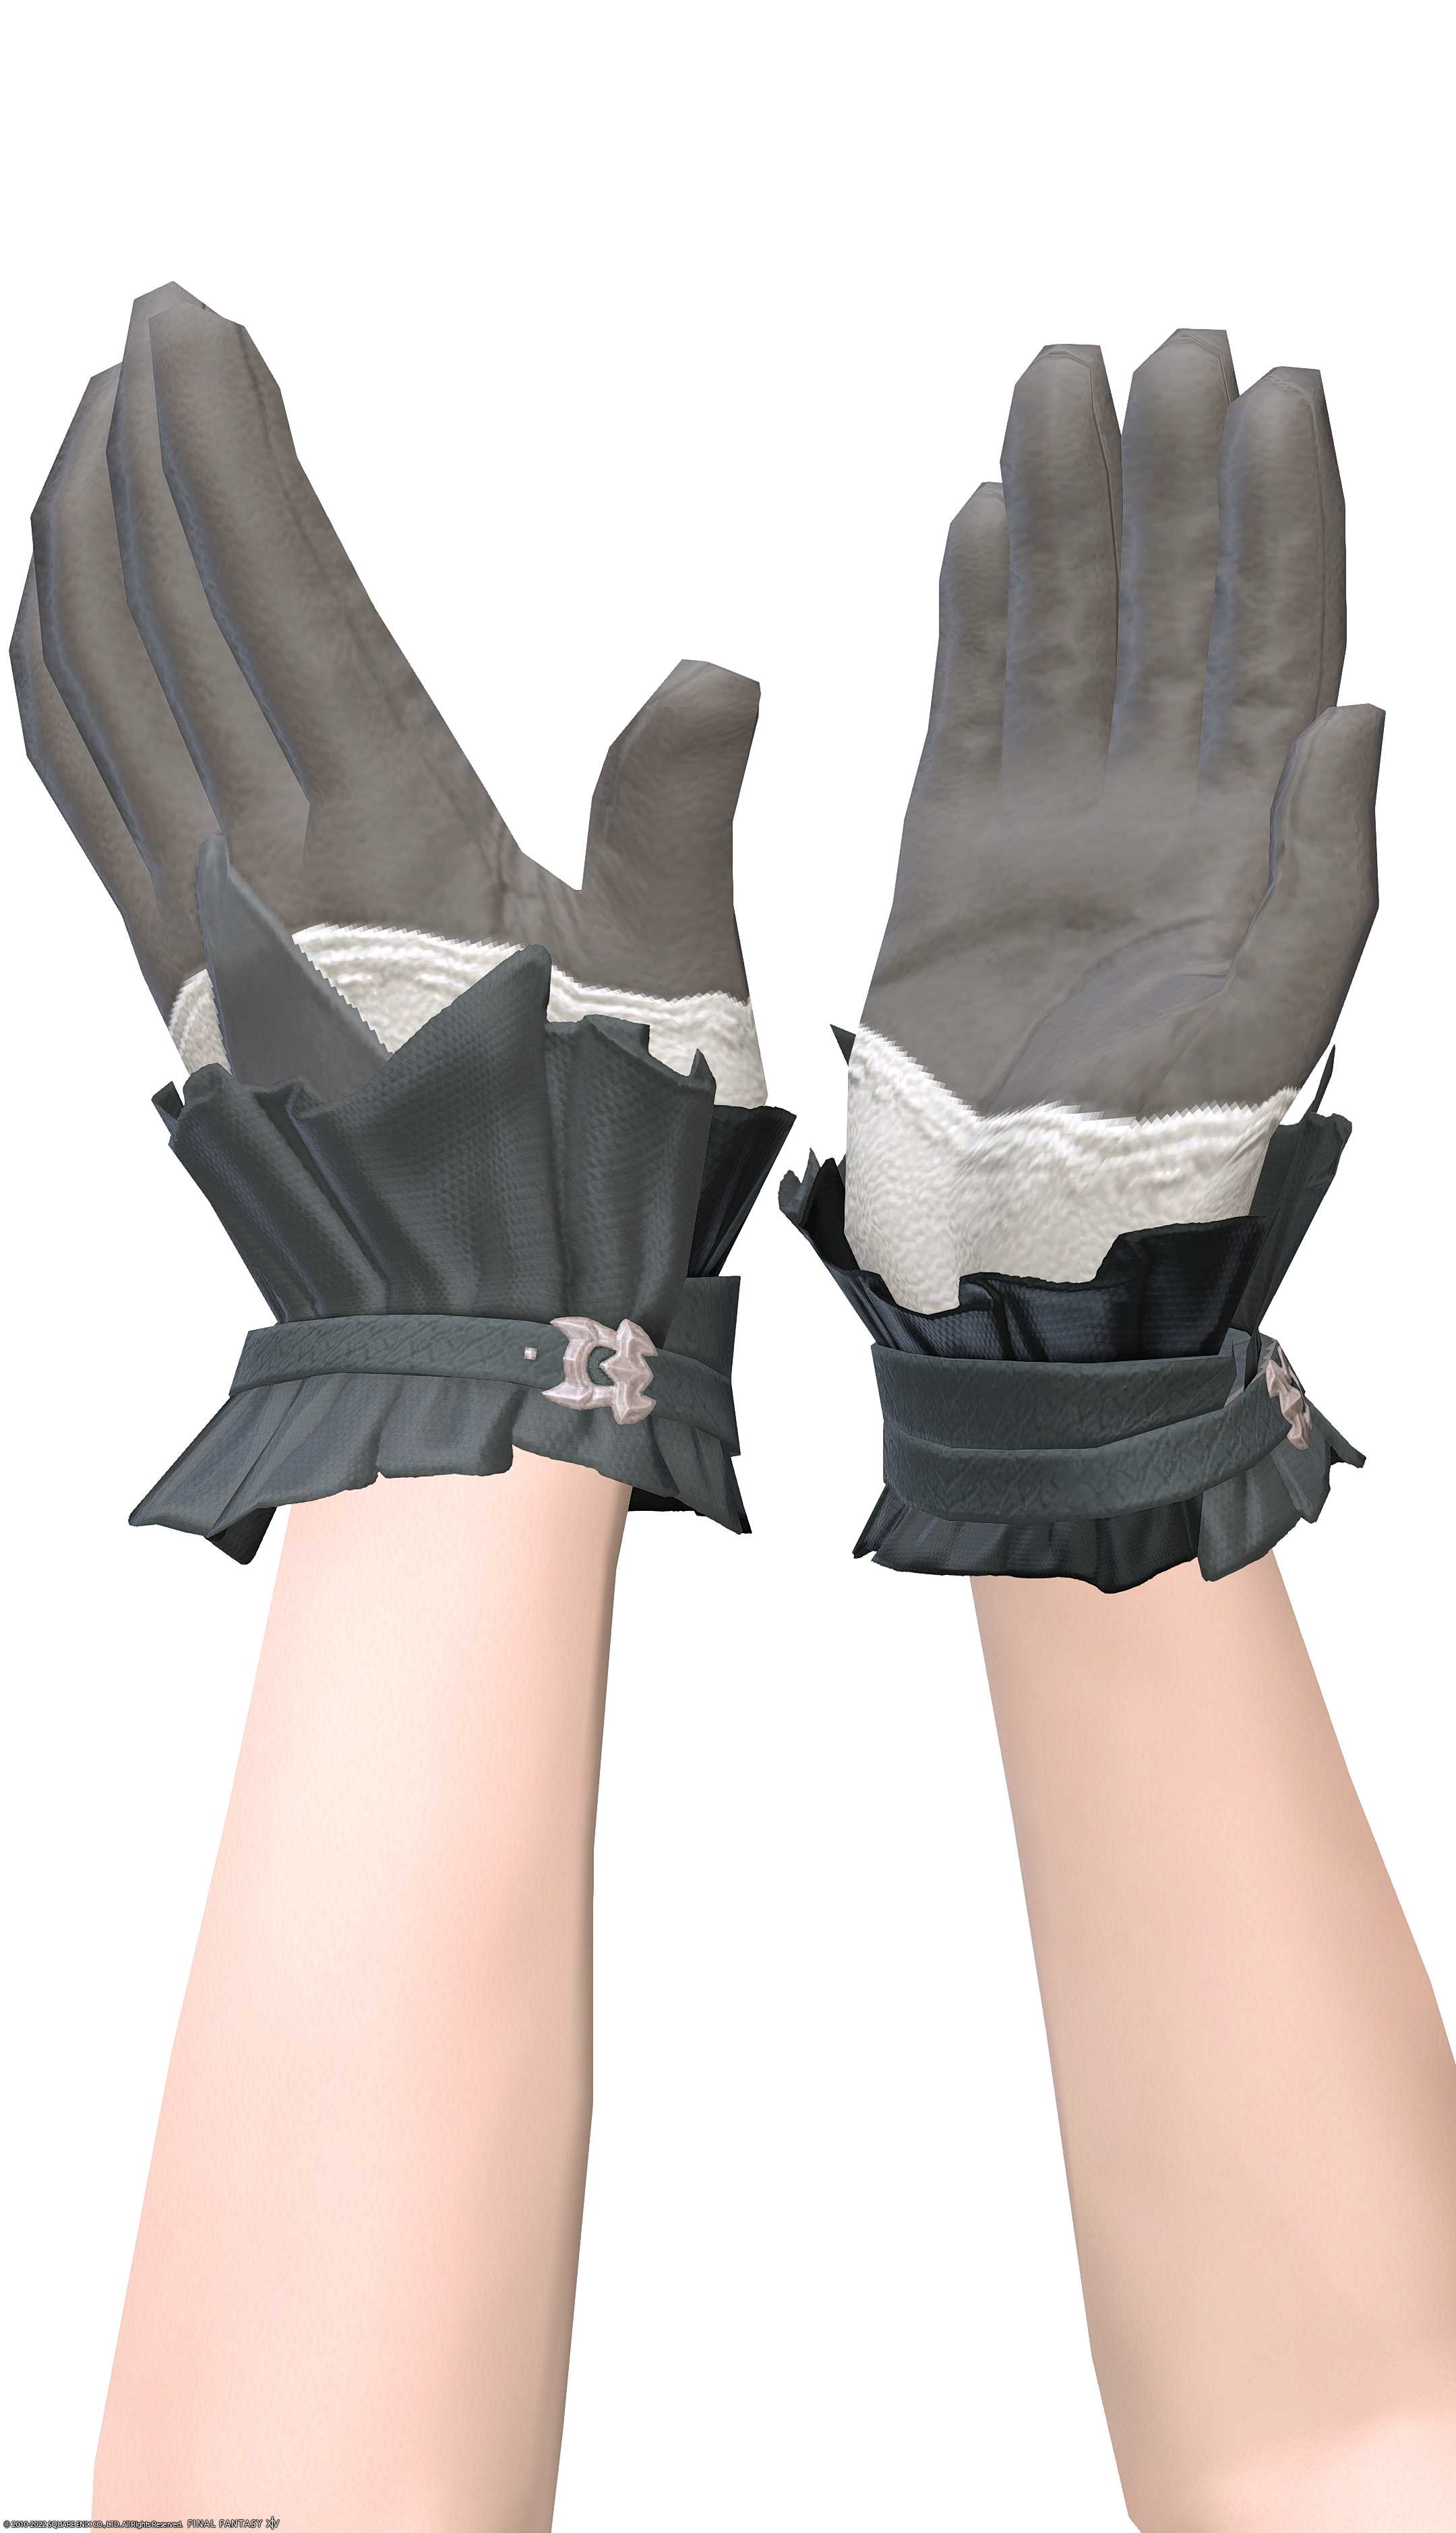 フッブート・キャスターグローブ | FF14ミラプリ - Voeburtite Gloves of Casting - 手袋/グローブ